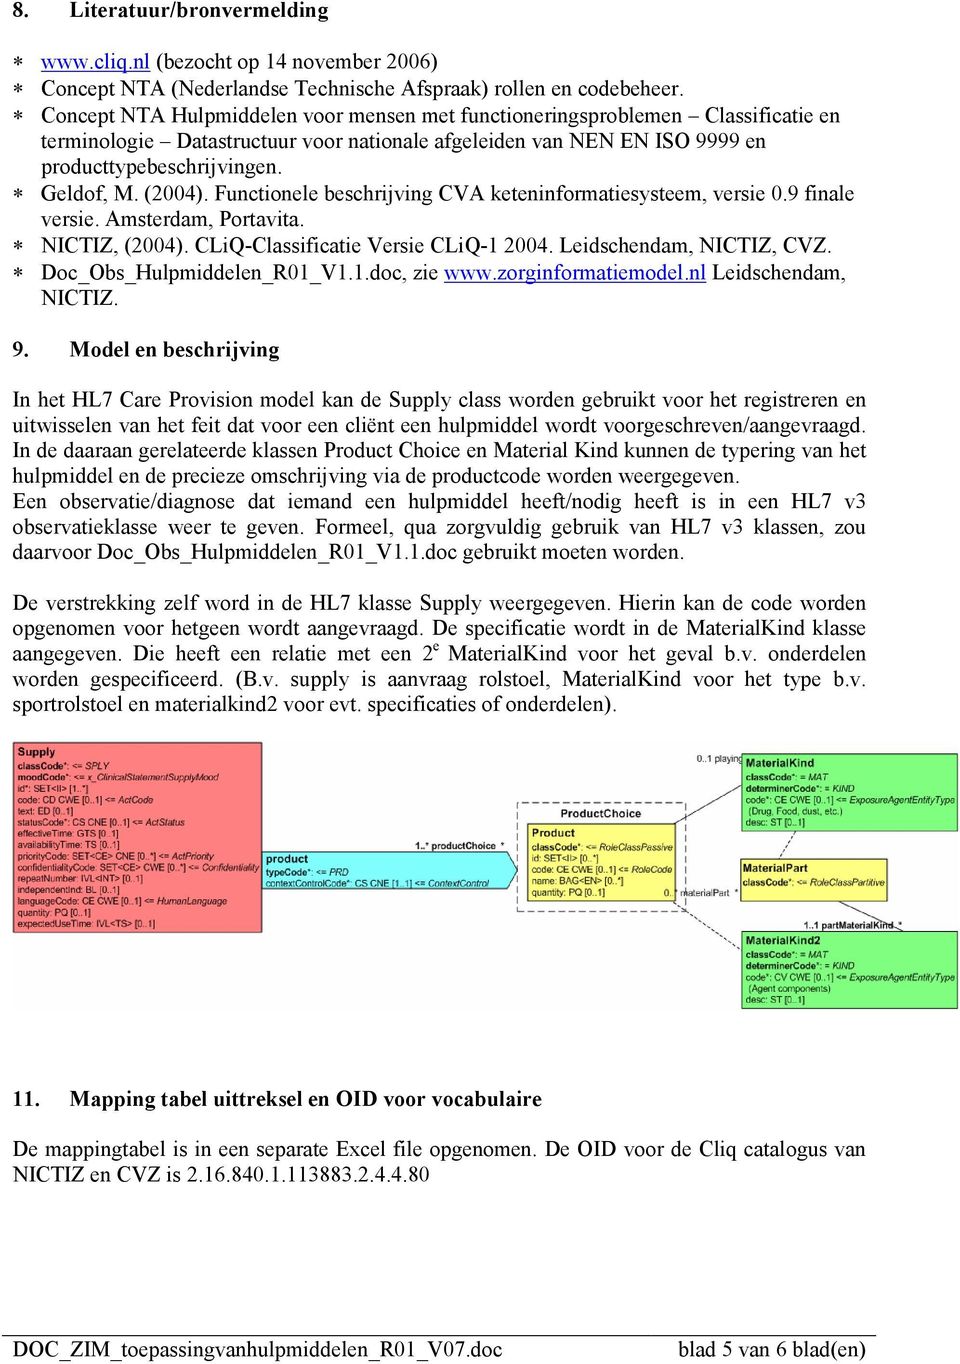 (2004). Functionele beschrijving CVA keteninformatiesysteem, versie 0.9 finale versie. Amsterdam, Portavita. NICTIZ, (2004). CLiQ-Classificatie Versie CLiQ-1 2004. Leidschendam, NICTIZ, CVZ.